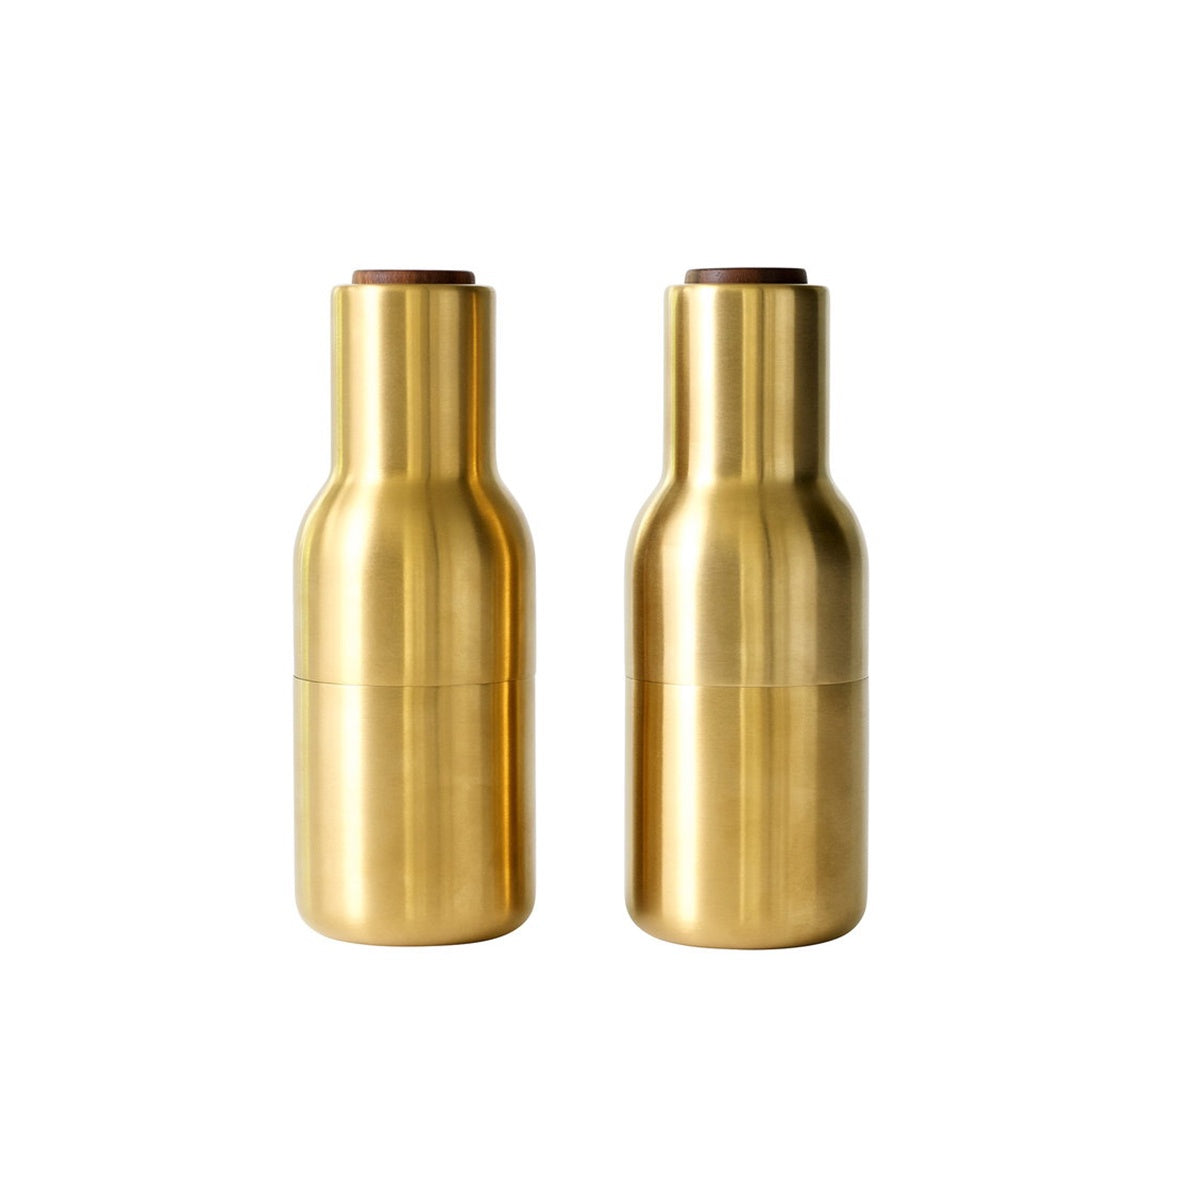 Bottle Grinder Set - Brushed Brass Gold by Audo Copenhagen